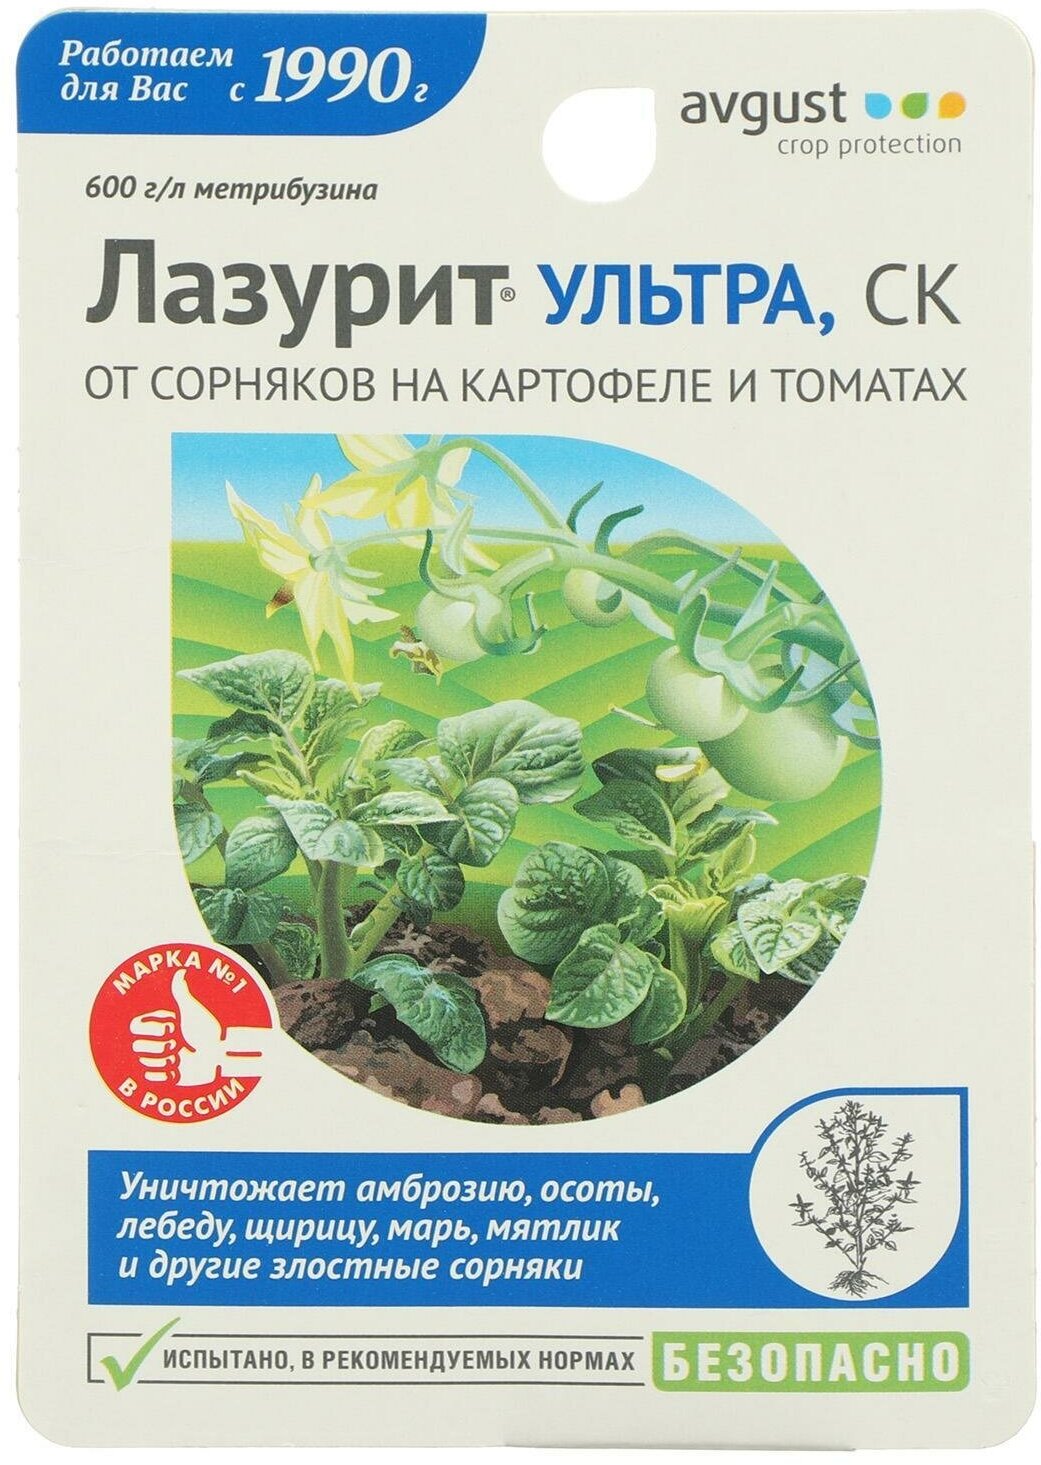 Средство для защиты от сорняков на картофеле и томатах "Август", "Лазурит Ультра", 9 мл